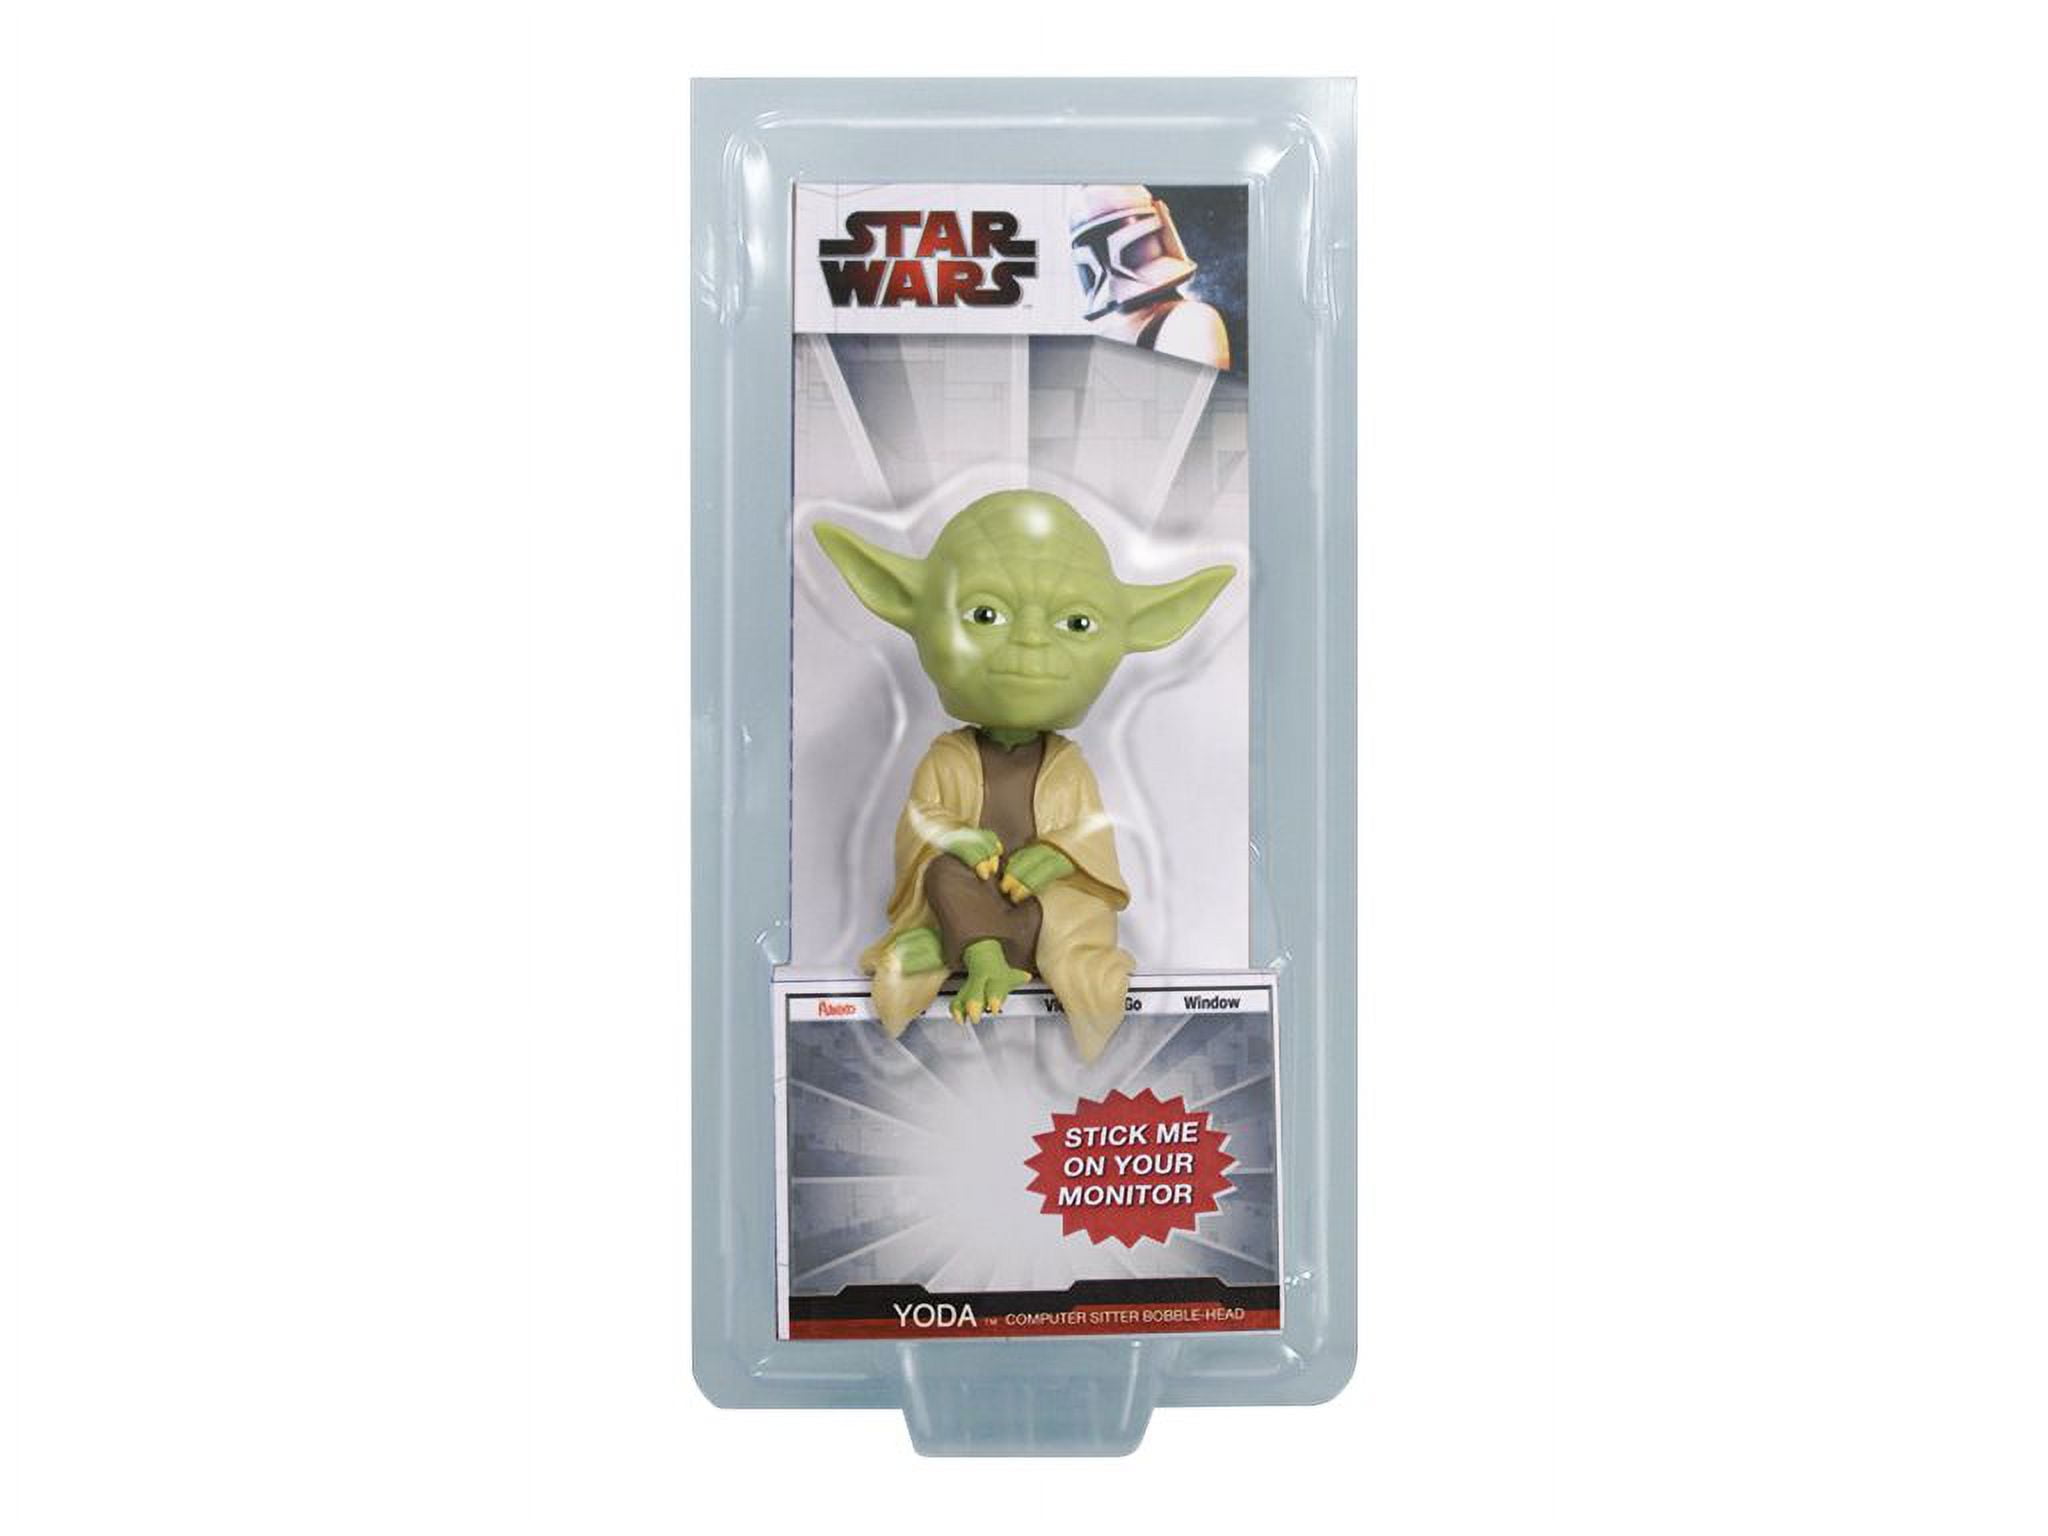 Funko Computer Sitter Star Wars - Yoda